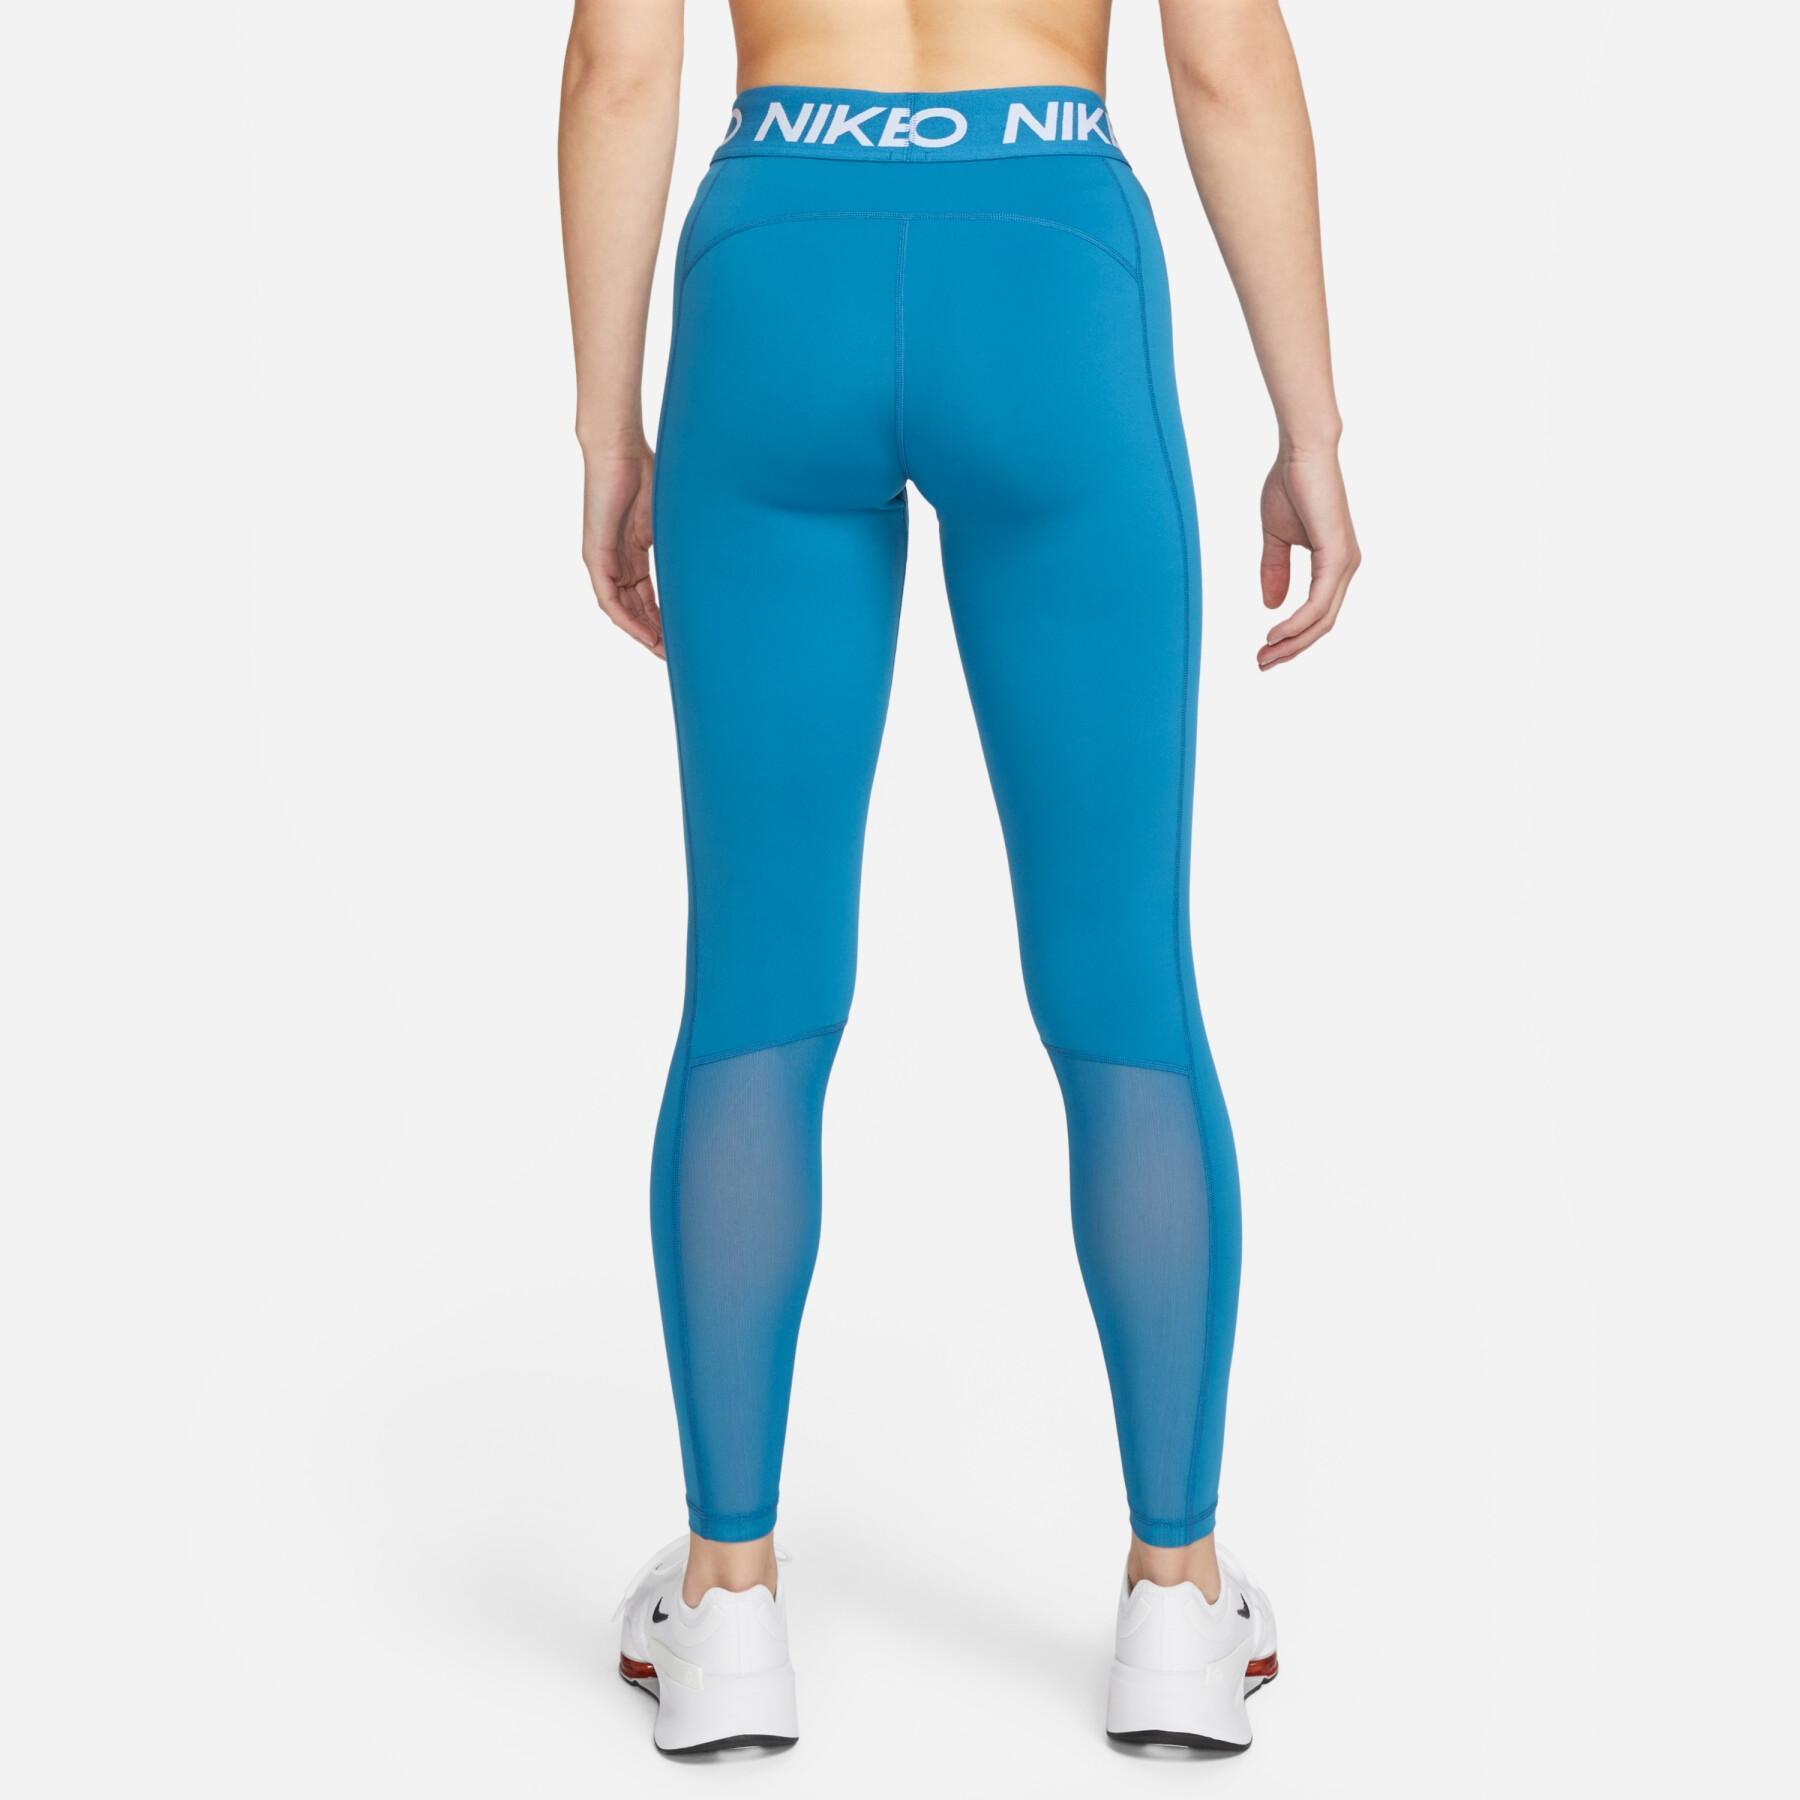 Women's leggings Nike Pro 365 - Leggings - Women's clothing - Fitness